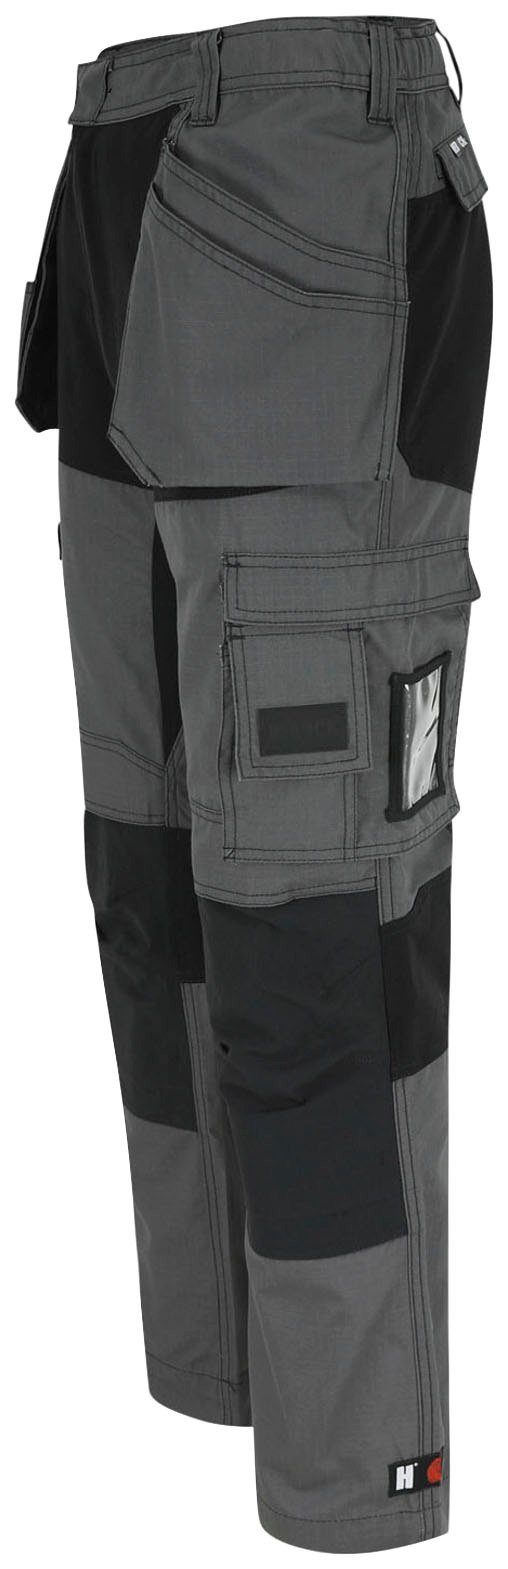 und Spector festen mit 4-Wege-Stretch-Teilen Herock 2 grau-schwarz Nageltaschen Arbeitshose Multi-Pocket-Hose Hose